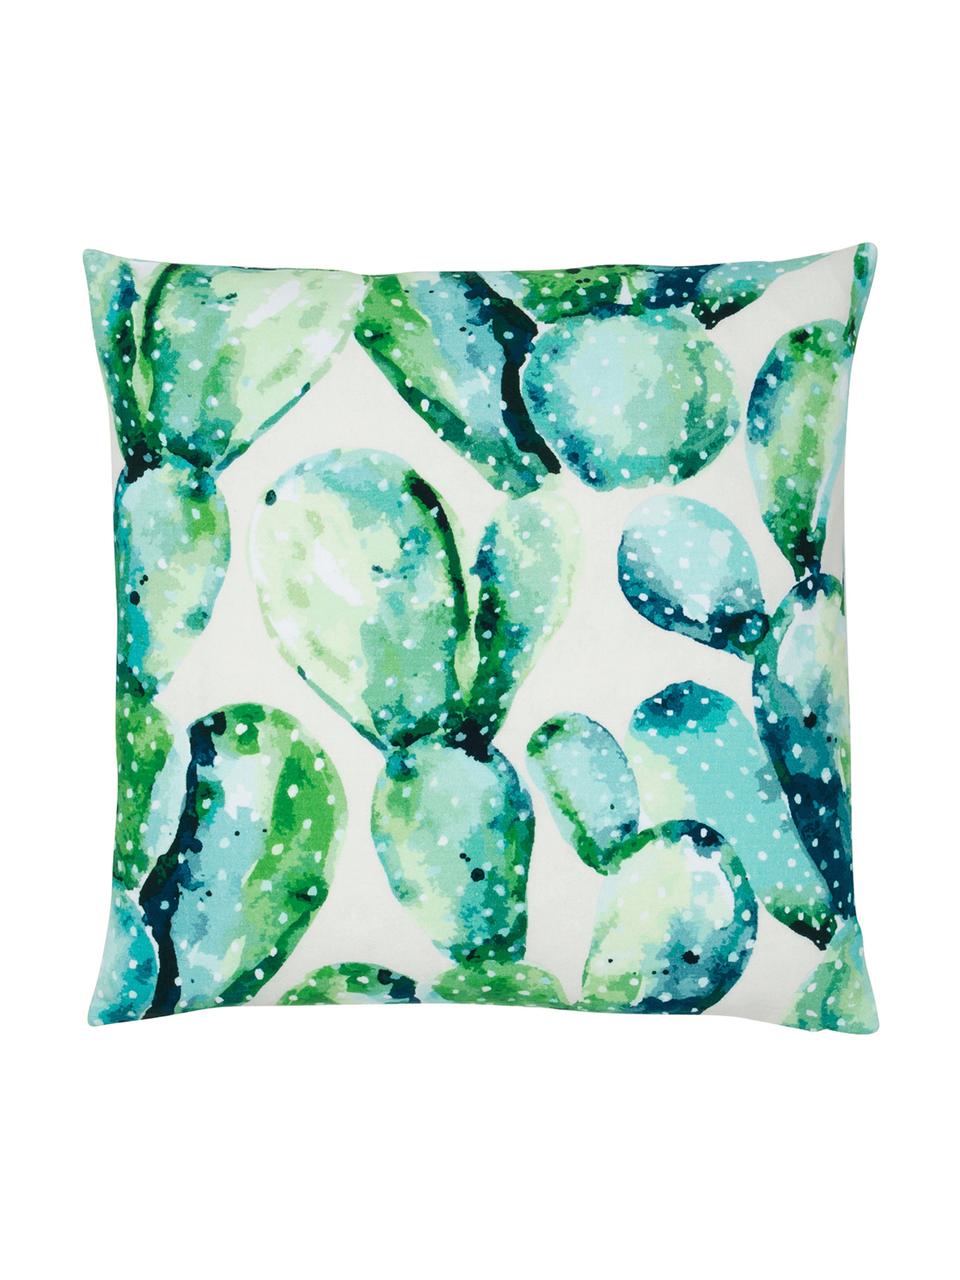 Kissenhülle Tobin mit Kaktus Print, 100% Baumwolle, Grün, Cremeweiß, 50 x 50 cm